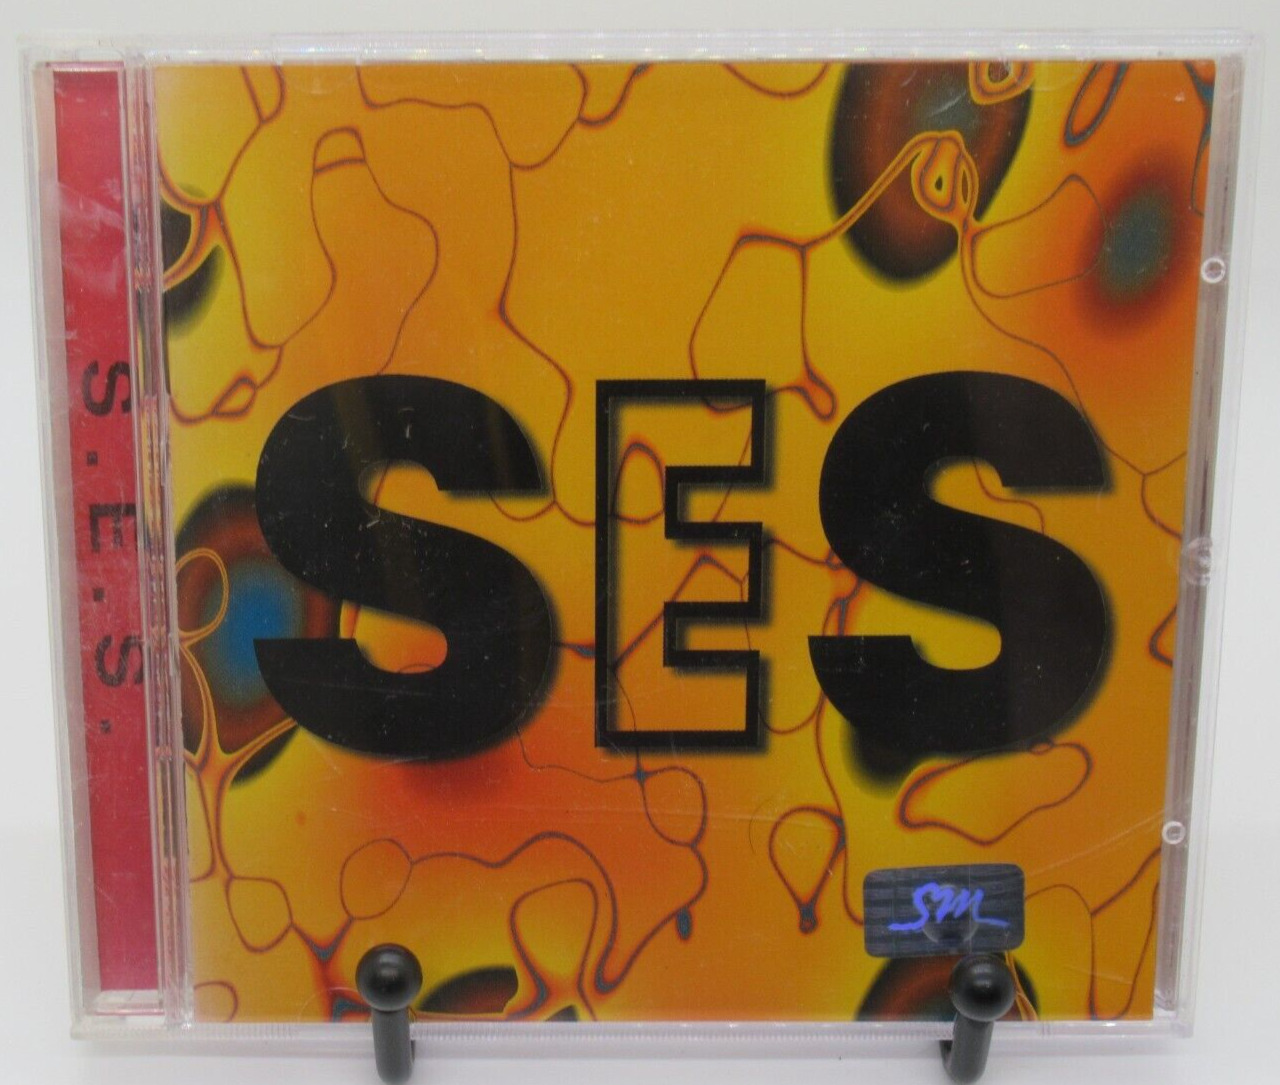 S.E.S: I\'M YOUR GIRL MUSIC CD, FIRST ALBUM KOREAN KPOP, 10 TRACKS, SYNNARA